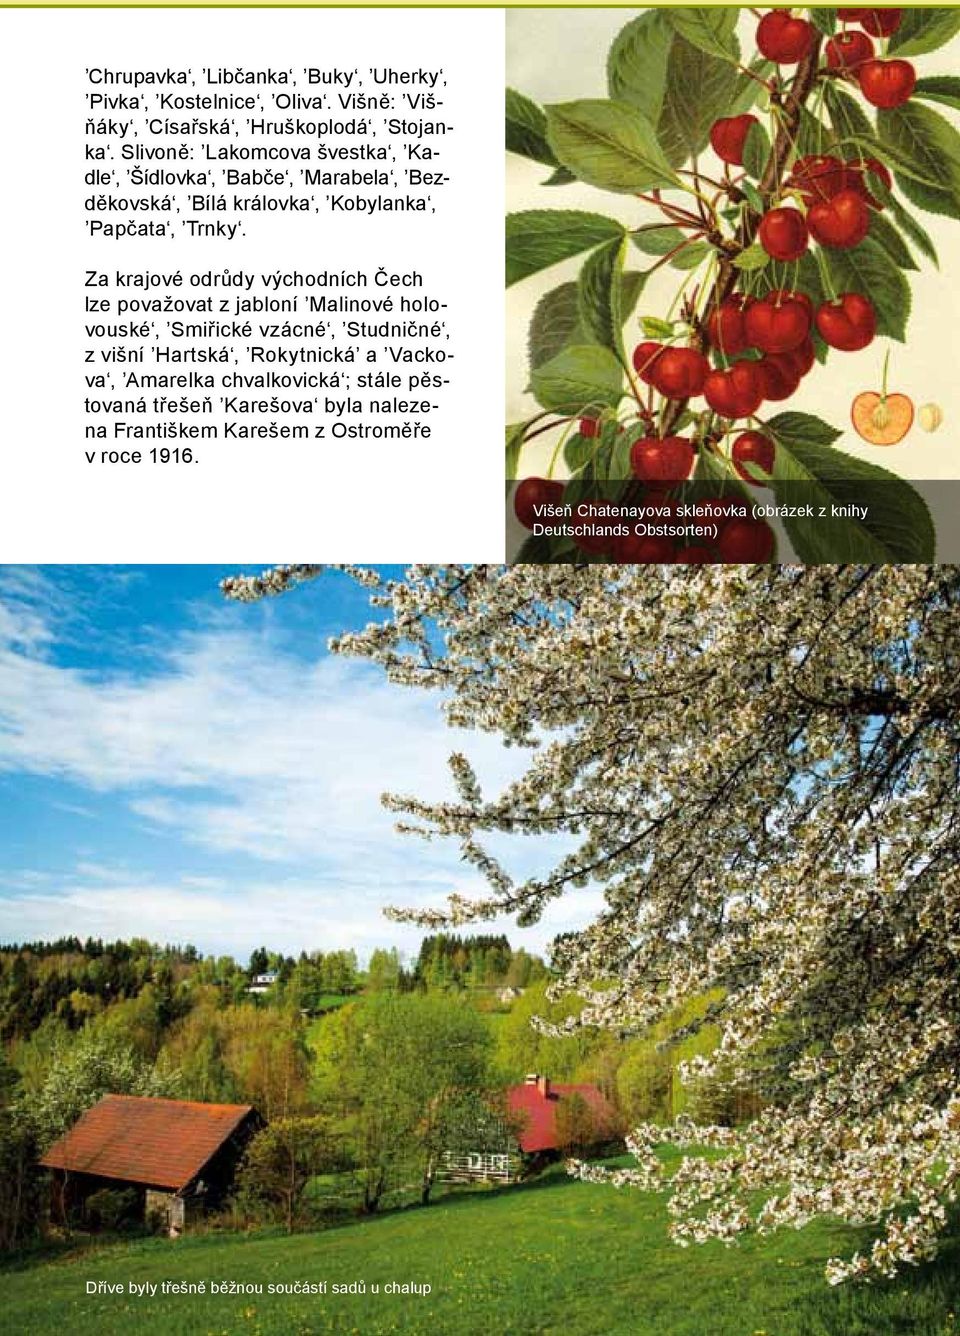 Za krajové odrůdy východních Čech lze považovat z jabloní Malinové holovouské, Smiřické vzácné, Studničné, z višní Hartská, Rokytnická a Vackova,